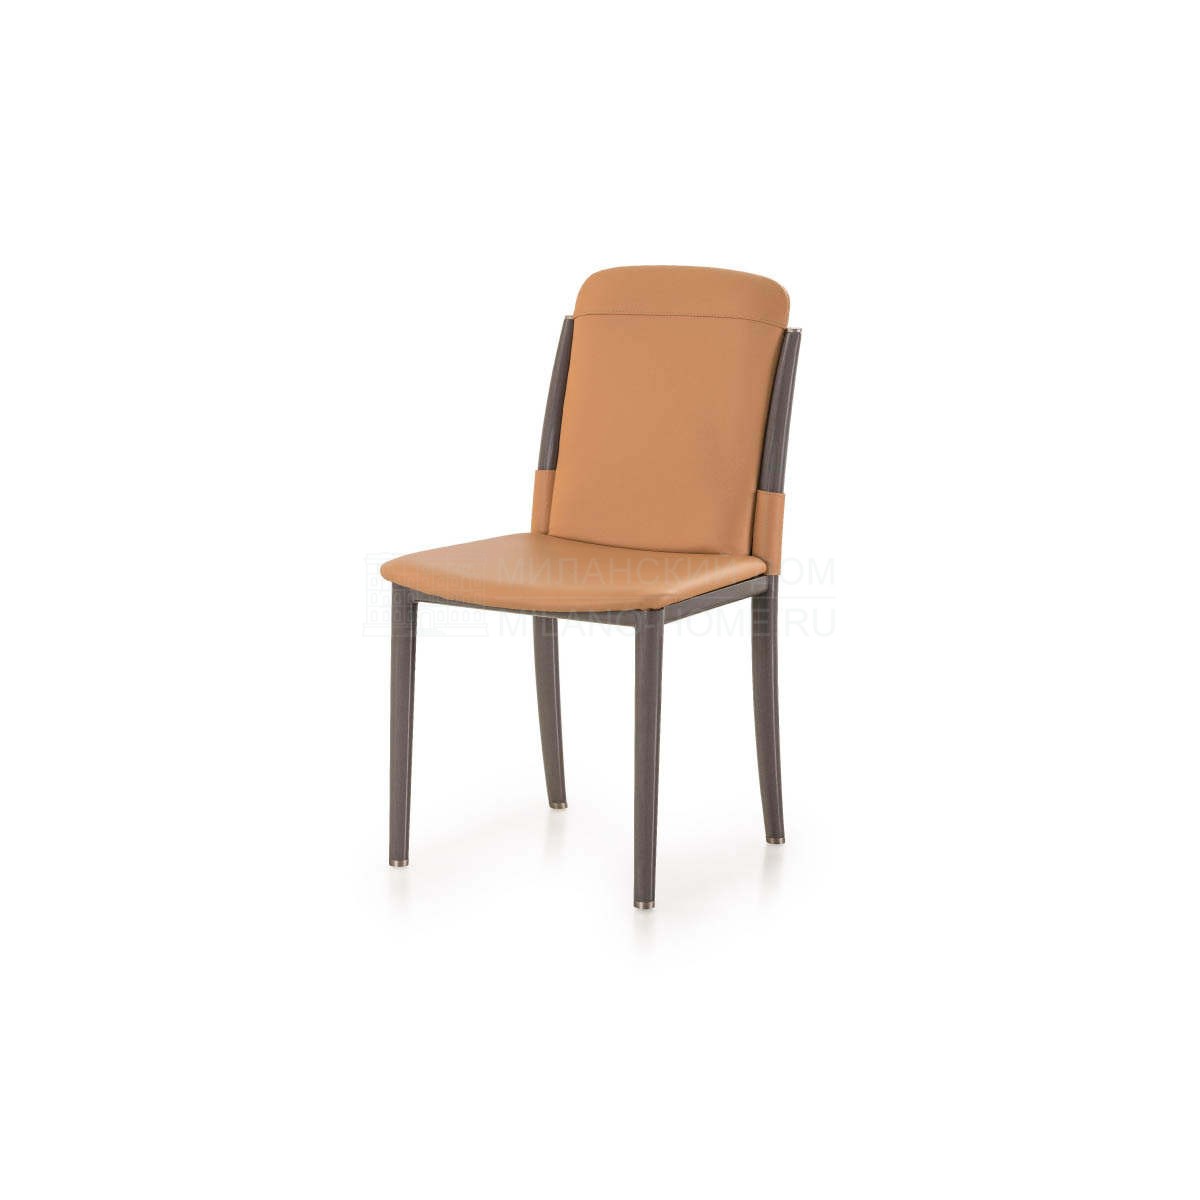 Кожаный стул Zero leather chair из Италии фабрики TURRI